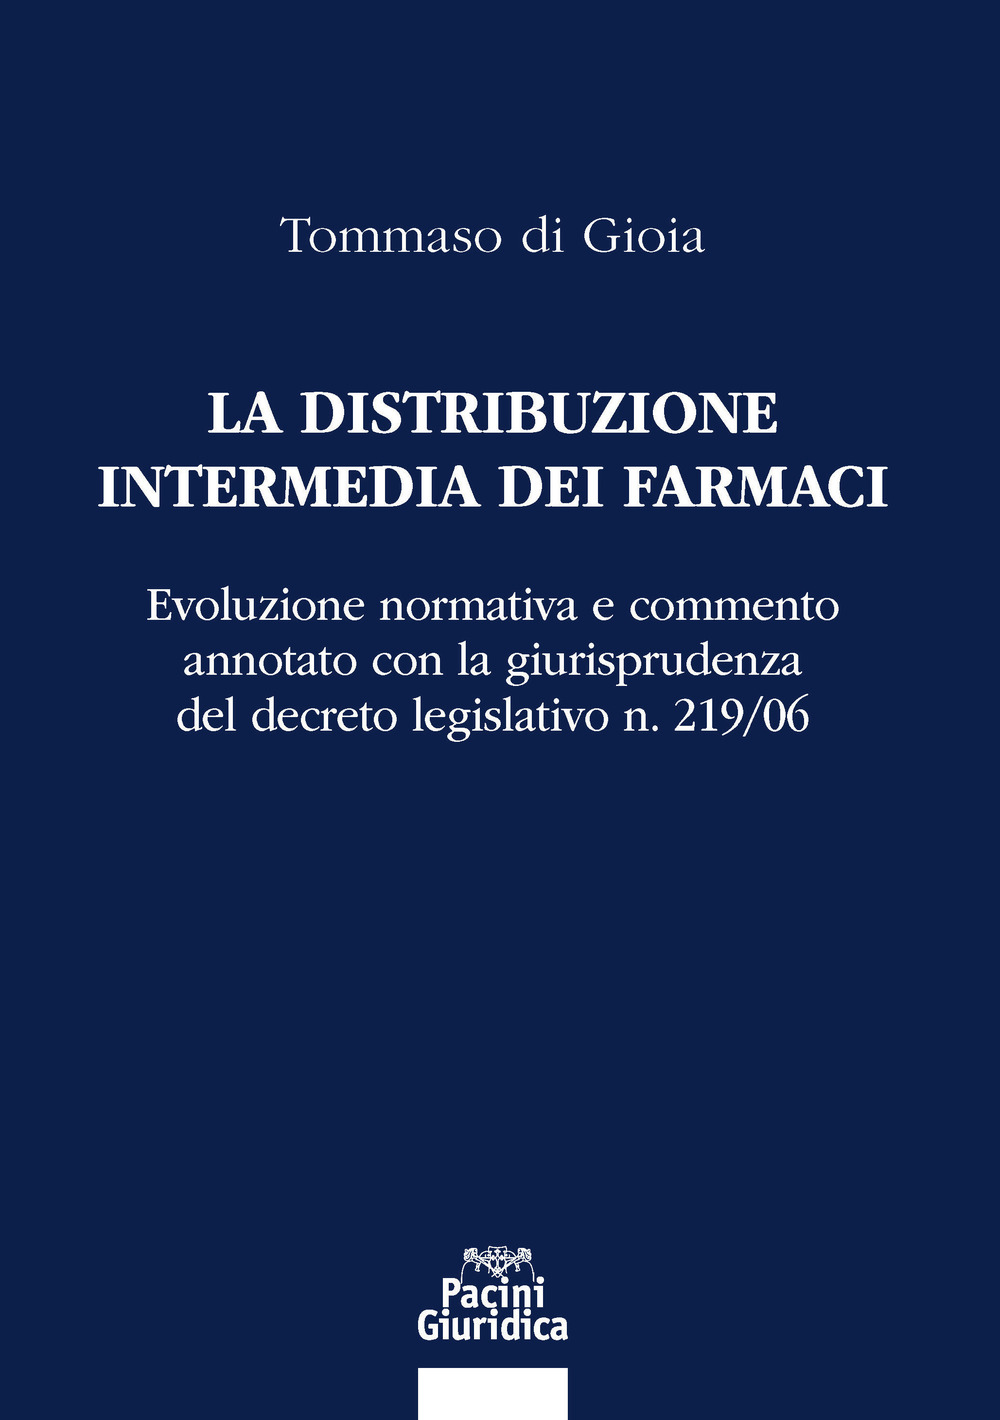 La distribuzione intermedia dei farmaci. Evoluzione normativa e commento annotato con la giurisprudenza del decreto legislativo n. 219/06